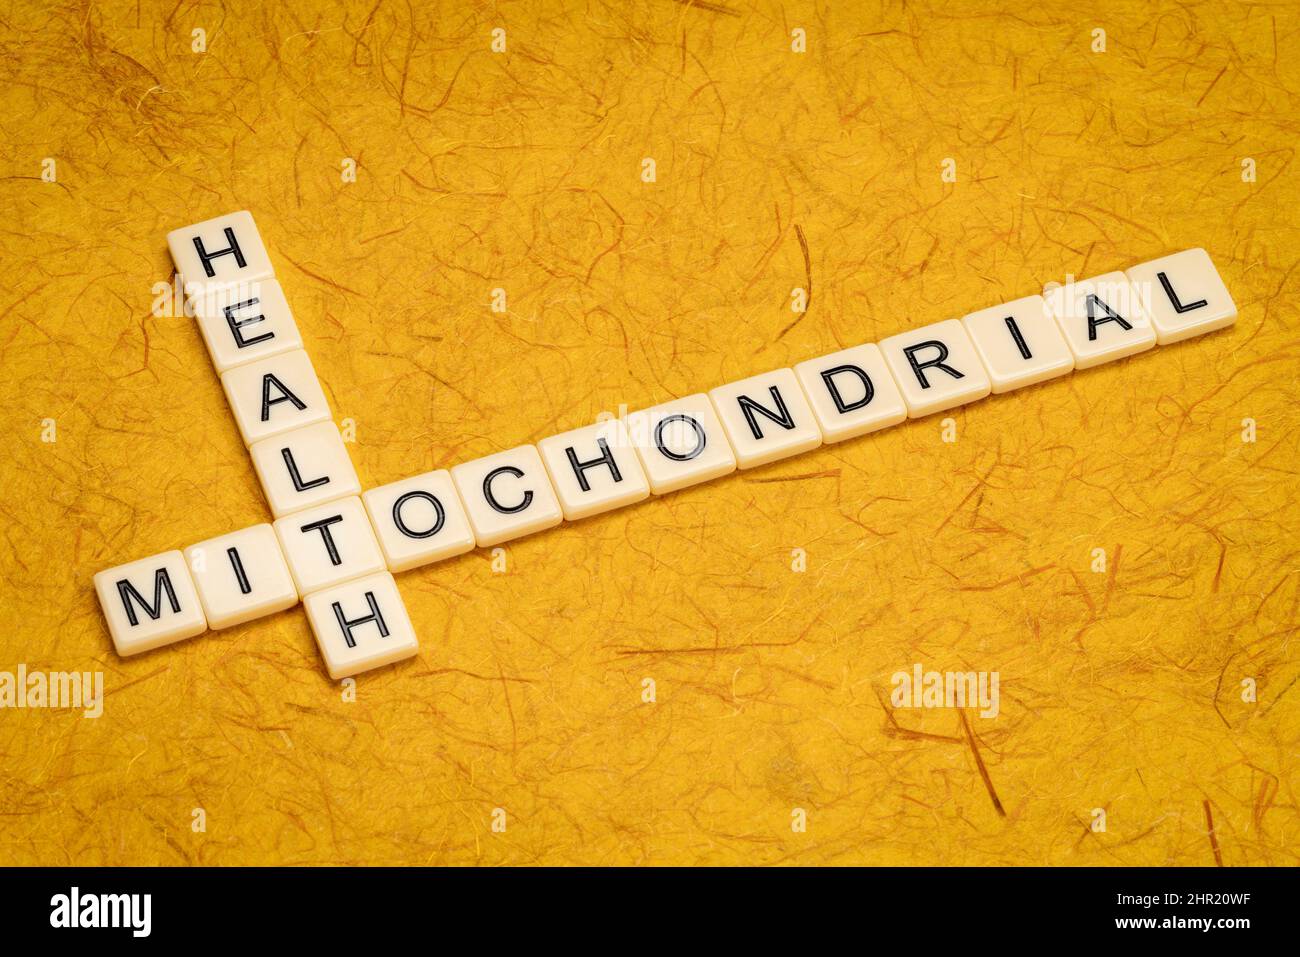 Mitochondriales Gesundheits-Kreuzworträtsel in Elfenbein Buchstaben Fliesen gegen texturiertes handgemachtes Papier, gesunden Lebensstil und Alterungskonzept Stockfoto